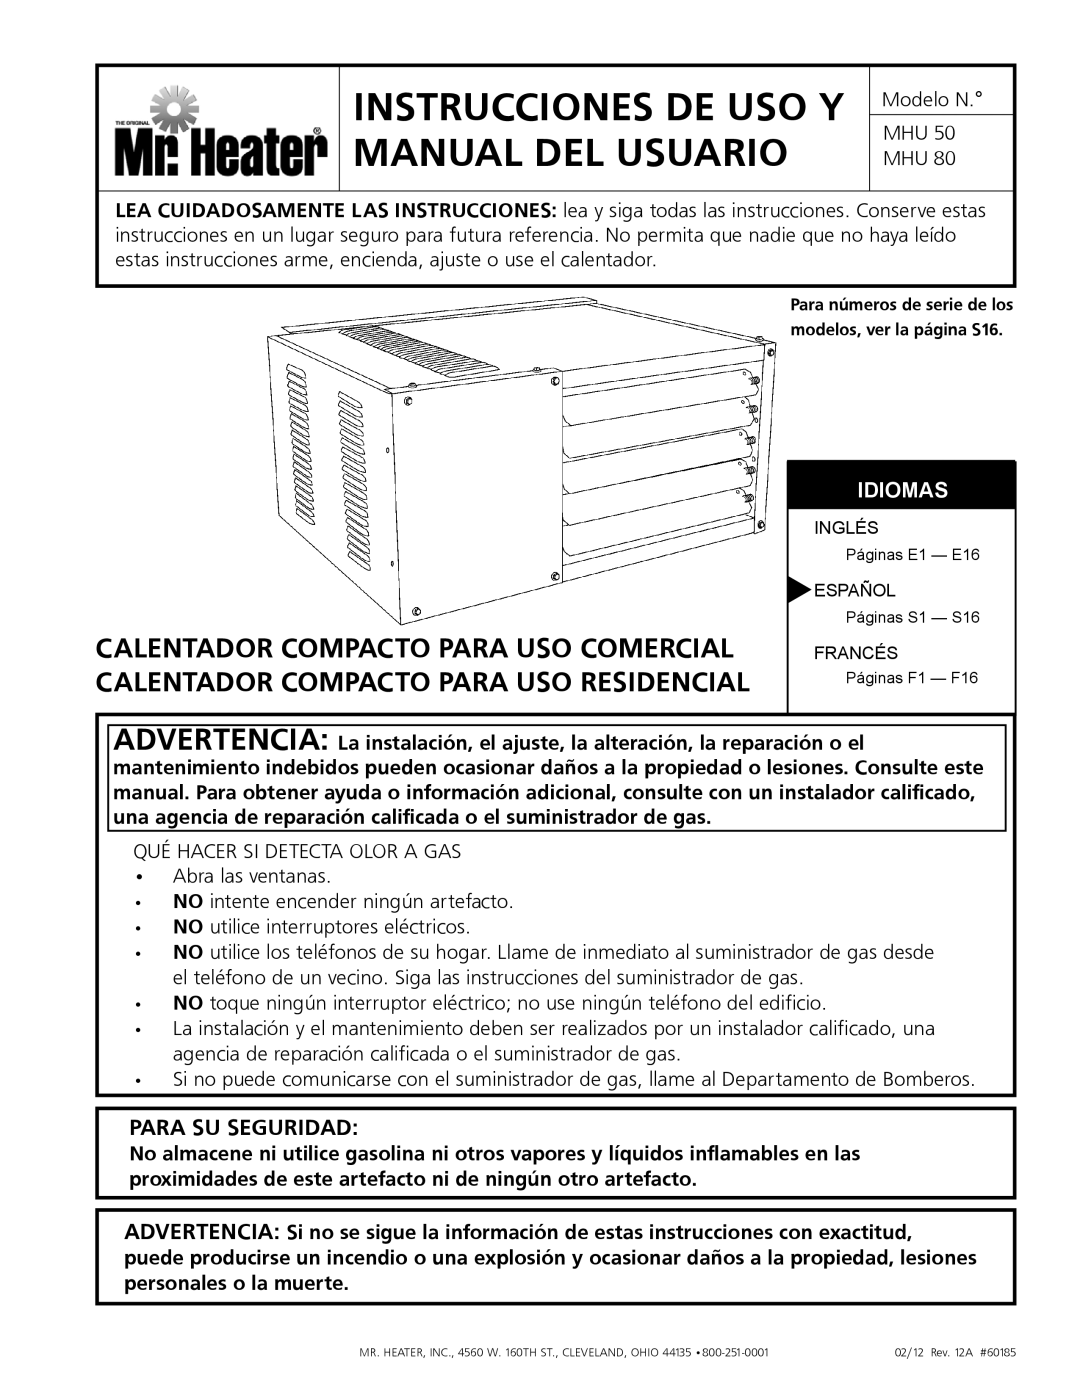 Mr. Heater MHU 80, MHU 50 owner manual Instrucciones De Uso Y Manual Del Usuario, Para Su Seguridad, Idiomas 